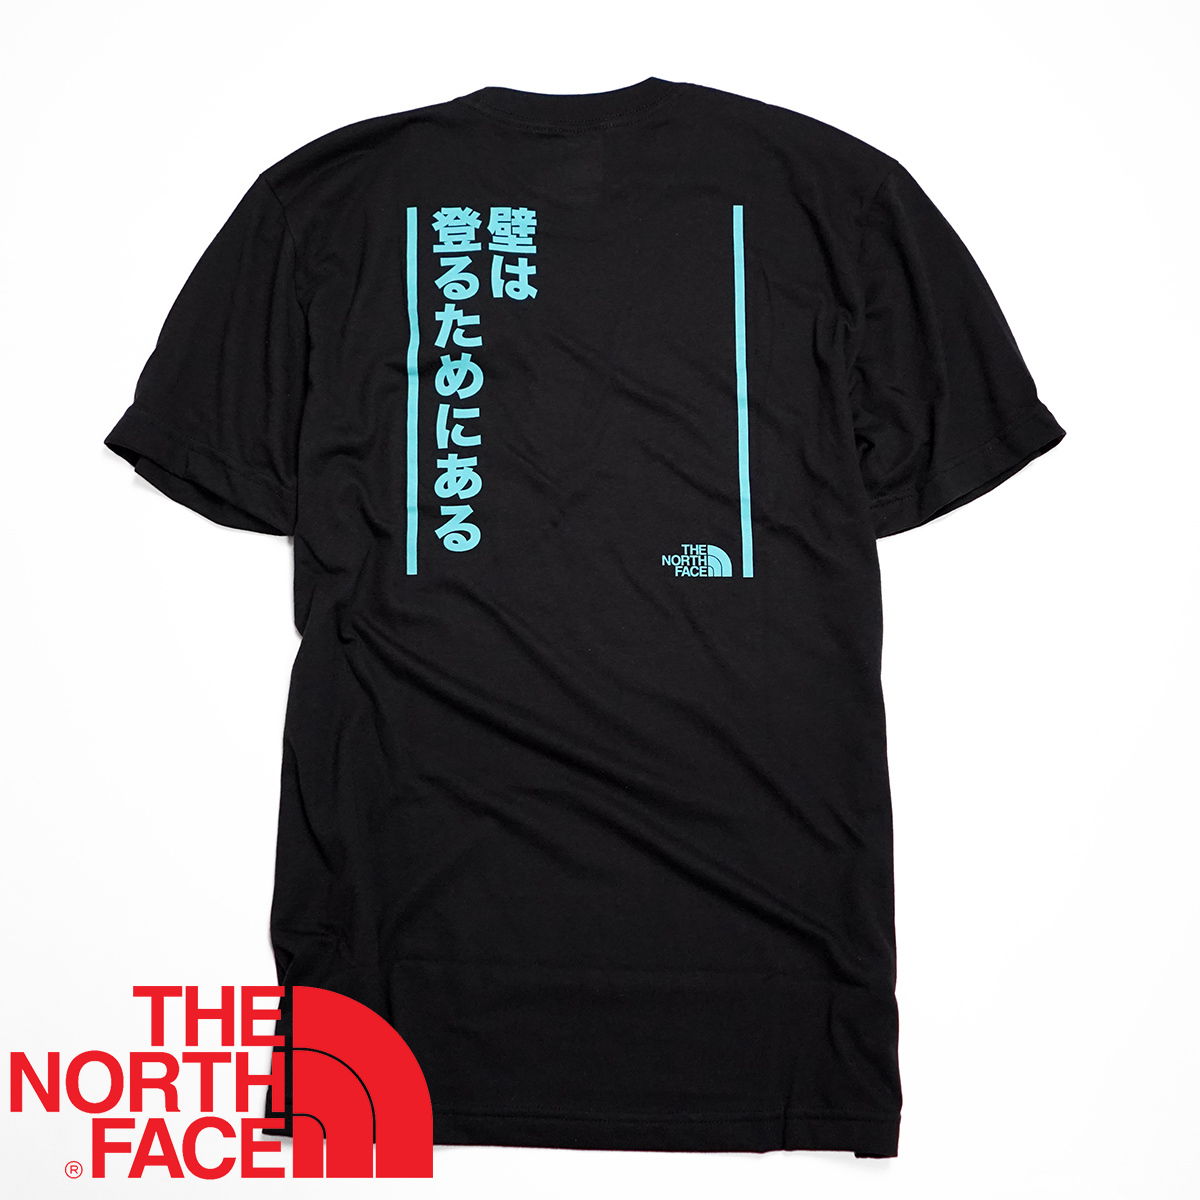 【新品本物 USA購入】THE NORTH FACE ノースフェイス ■ MEANT FOR CLIMBING T ■ ブラック / XL ■ 日本語ロゴ Tシャツ 半袖 海外限定_画像1